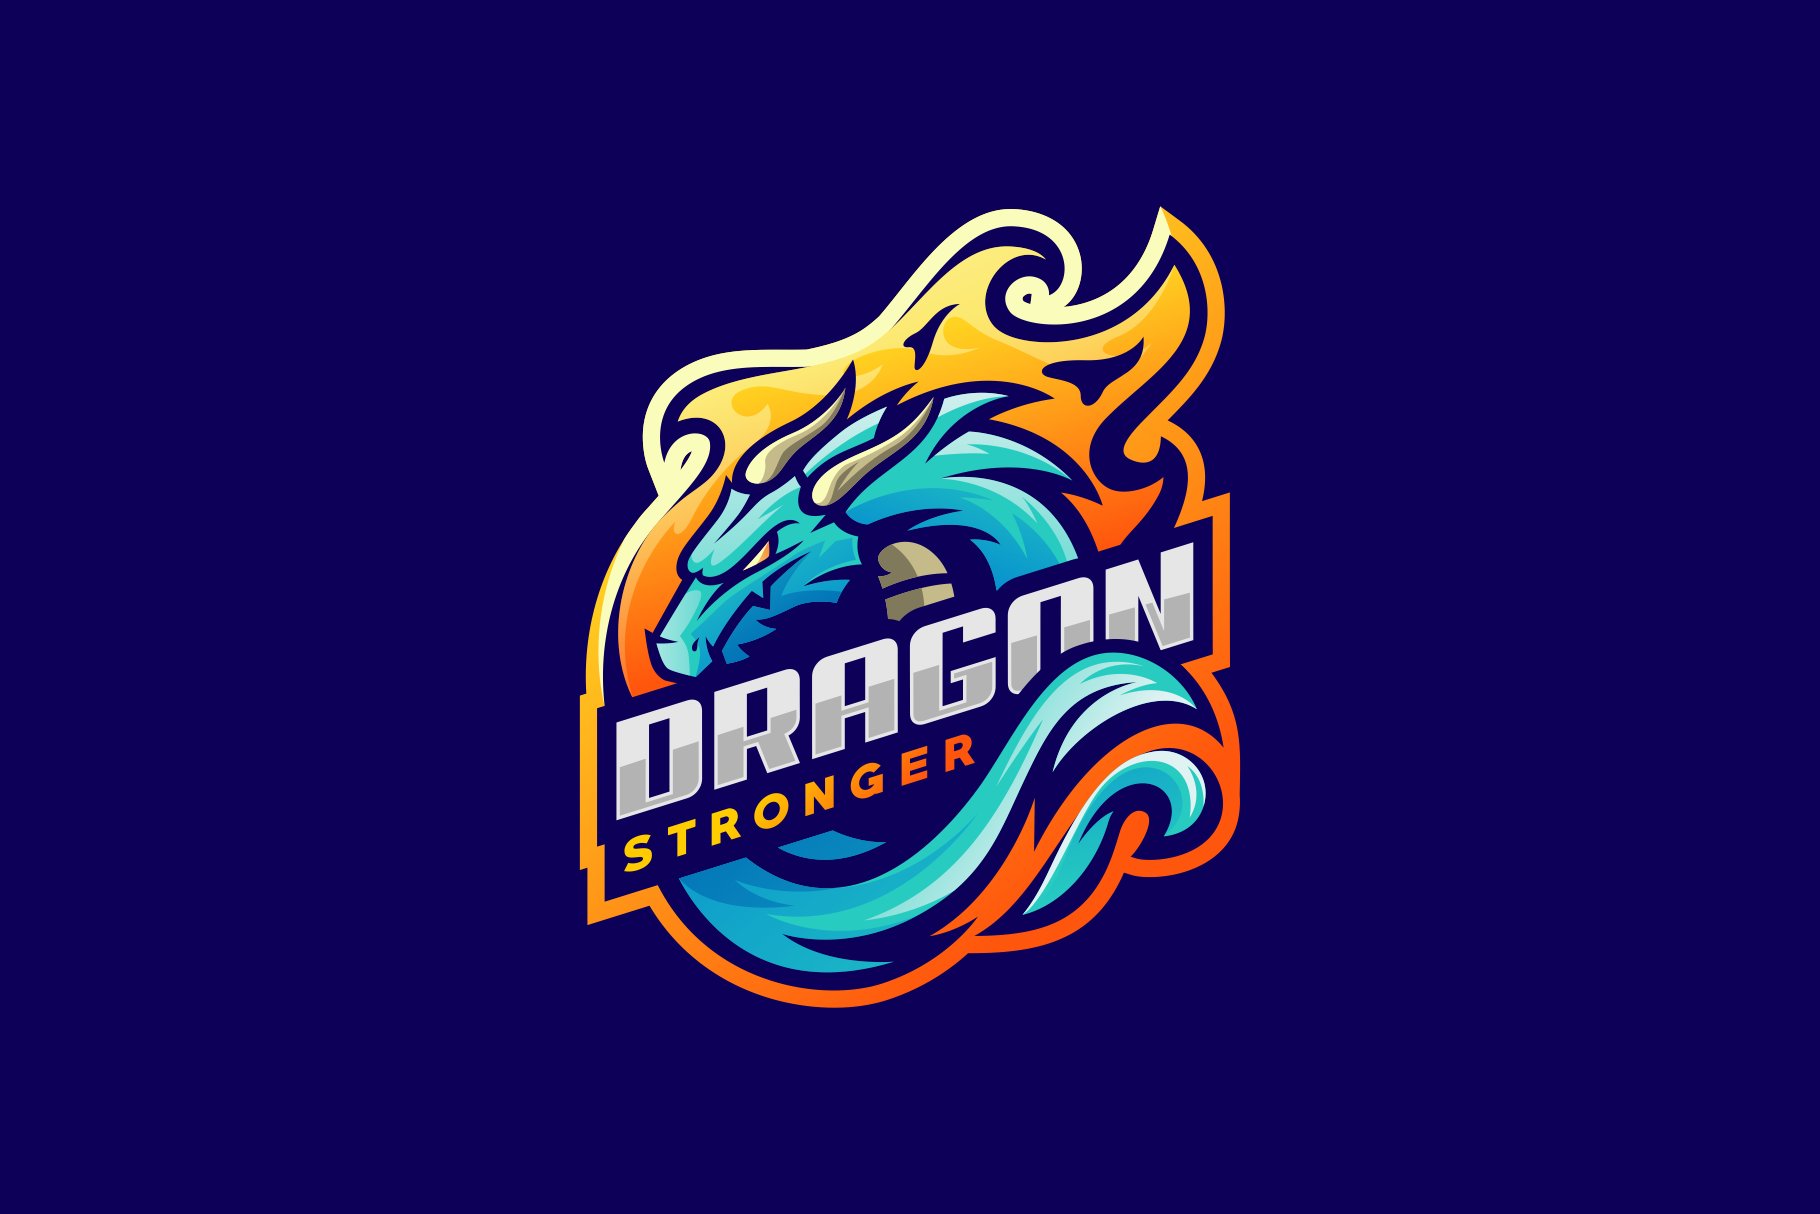 Dragon Stronger Logo Esport cover image.